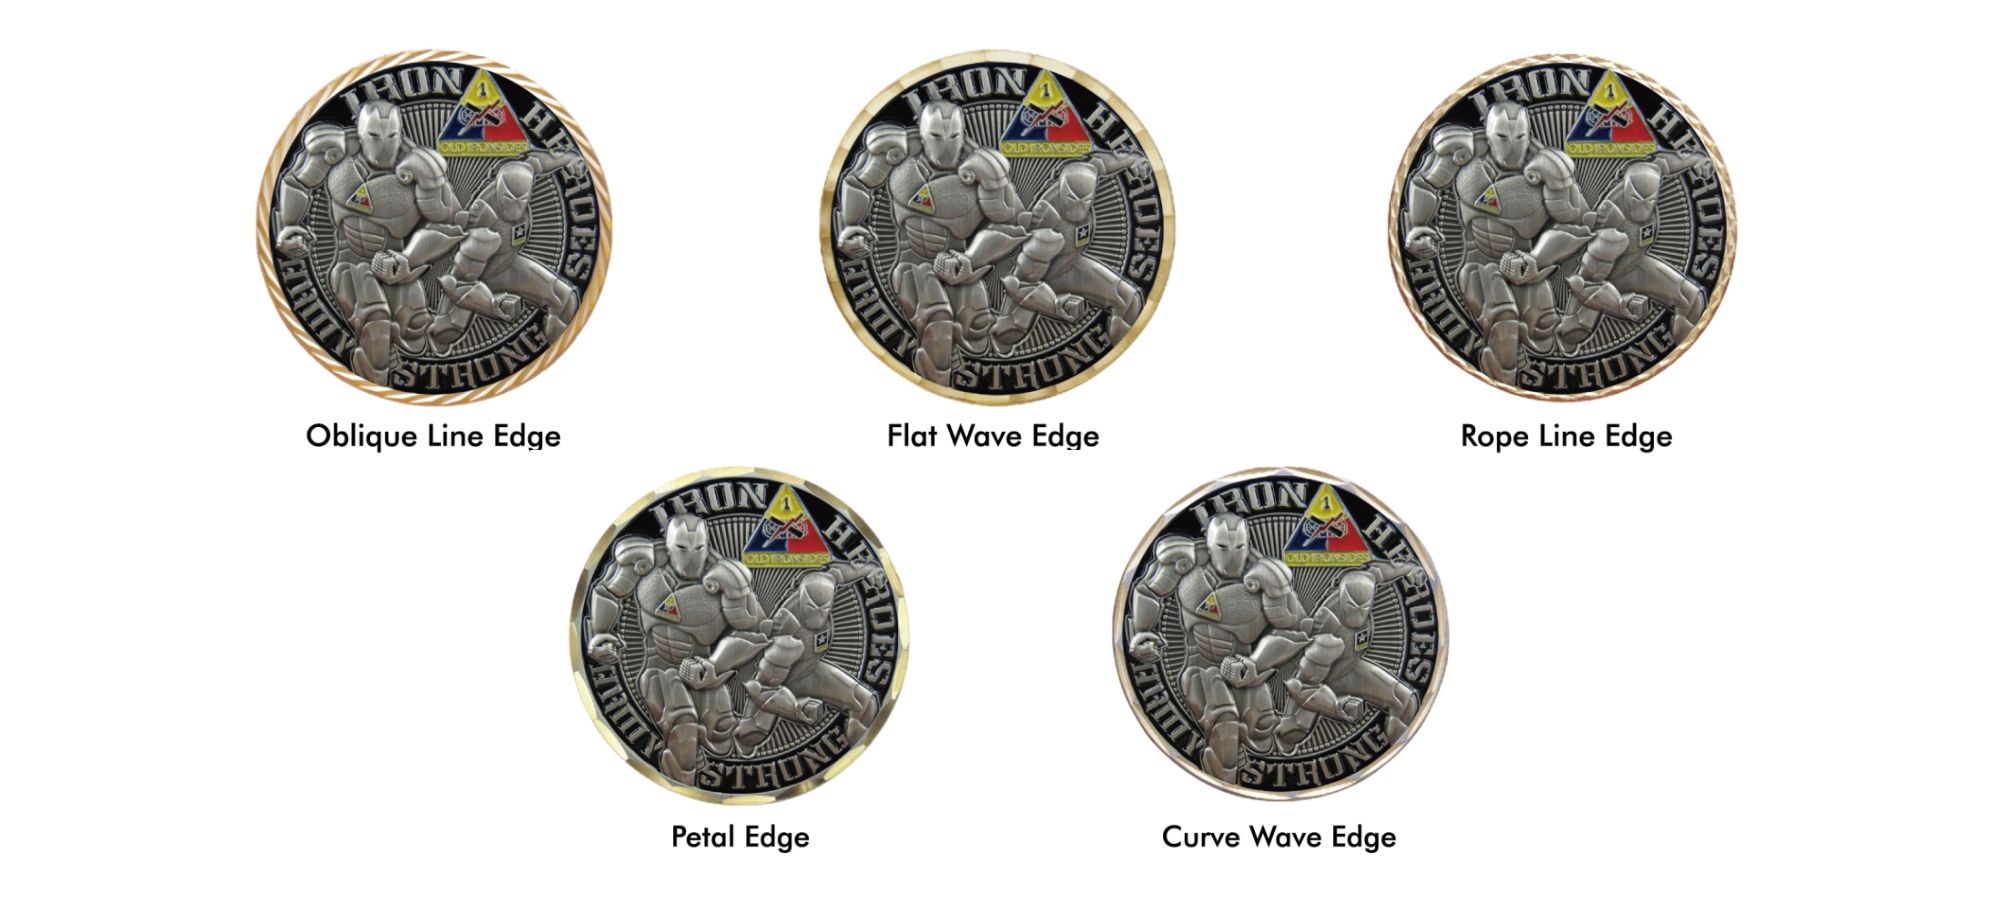 Con la nostra guida, puoi creare le tue monete che riflettono il tuo stile e messaggio unici.